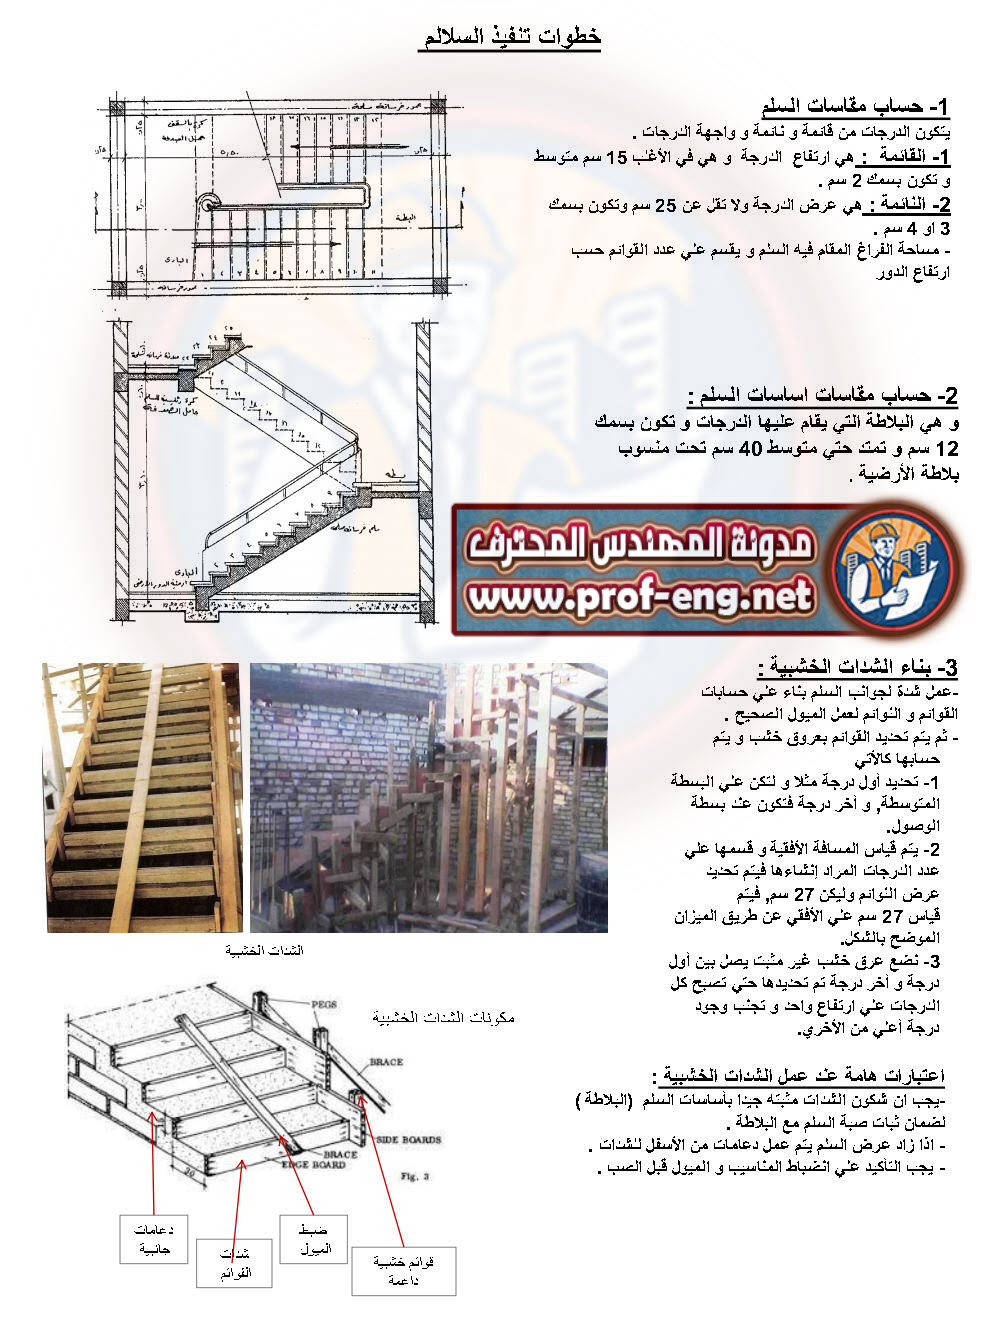 مذكرة السلالم pdf تصميم السلالم و خطوات تنفيذ واستلام السلالم